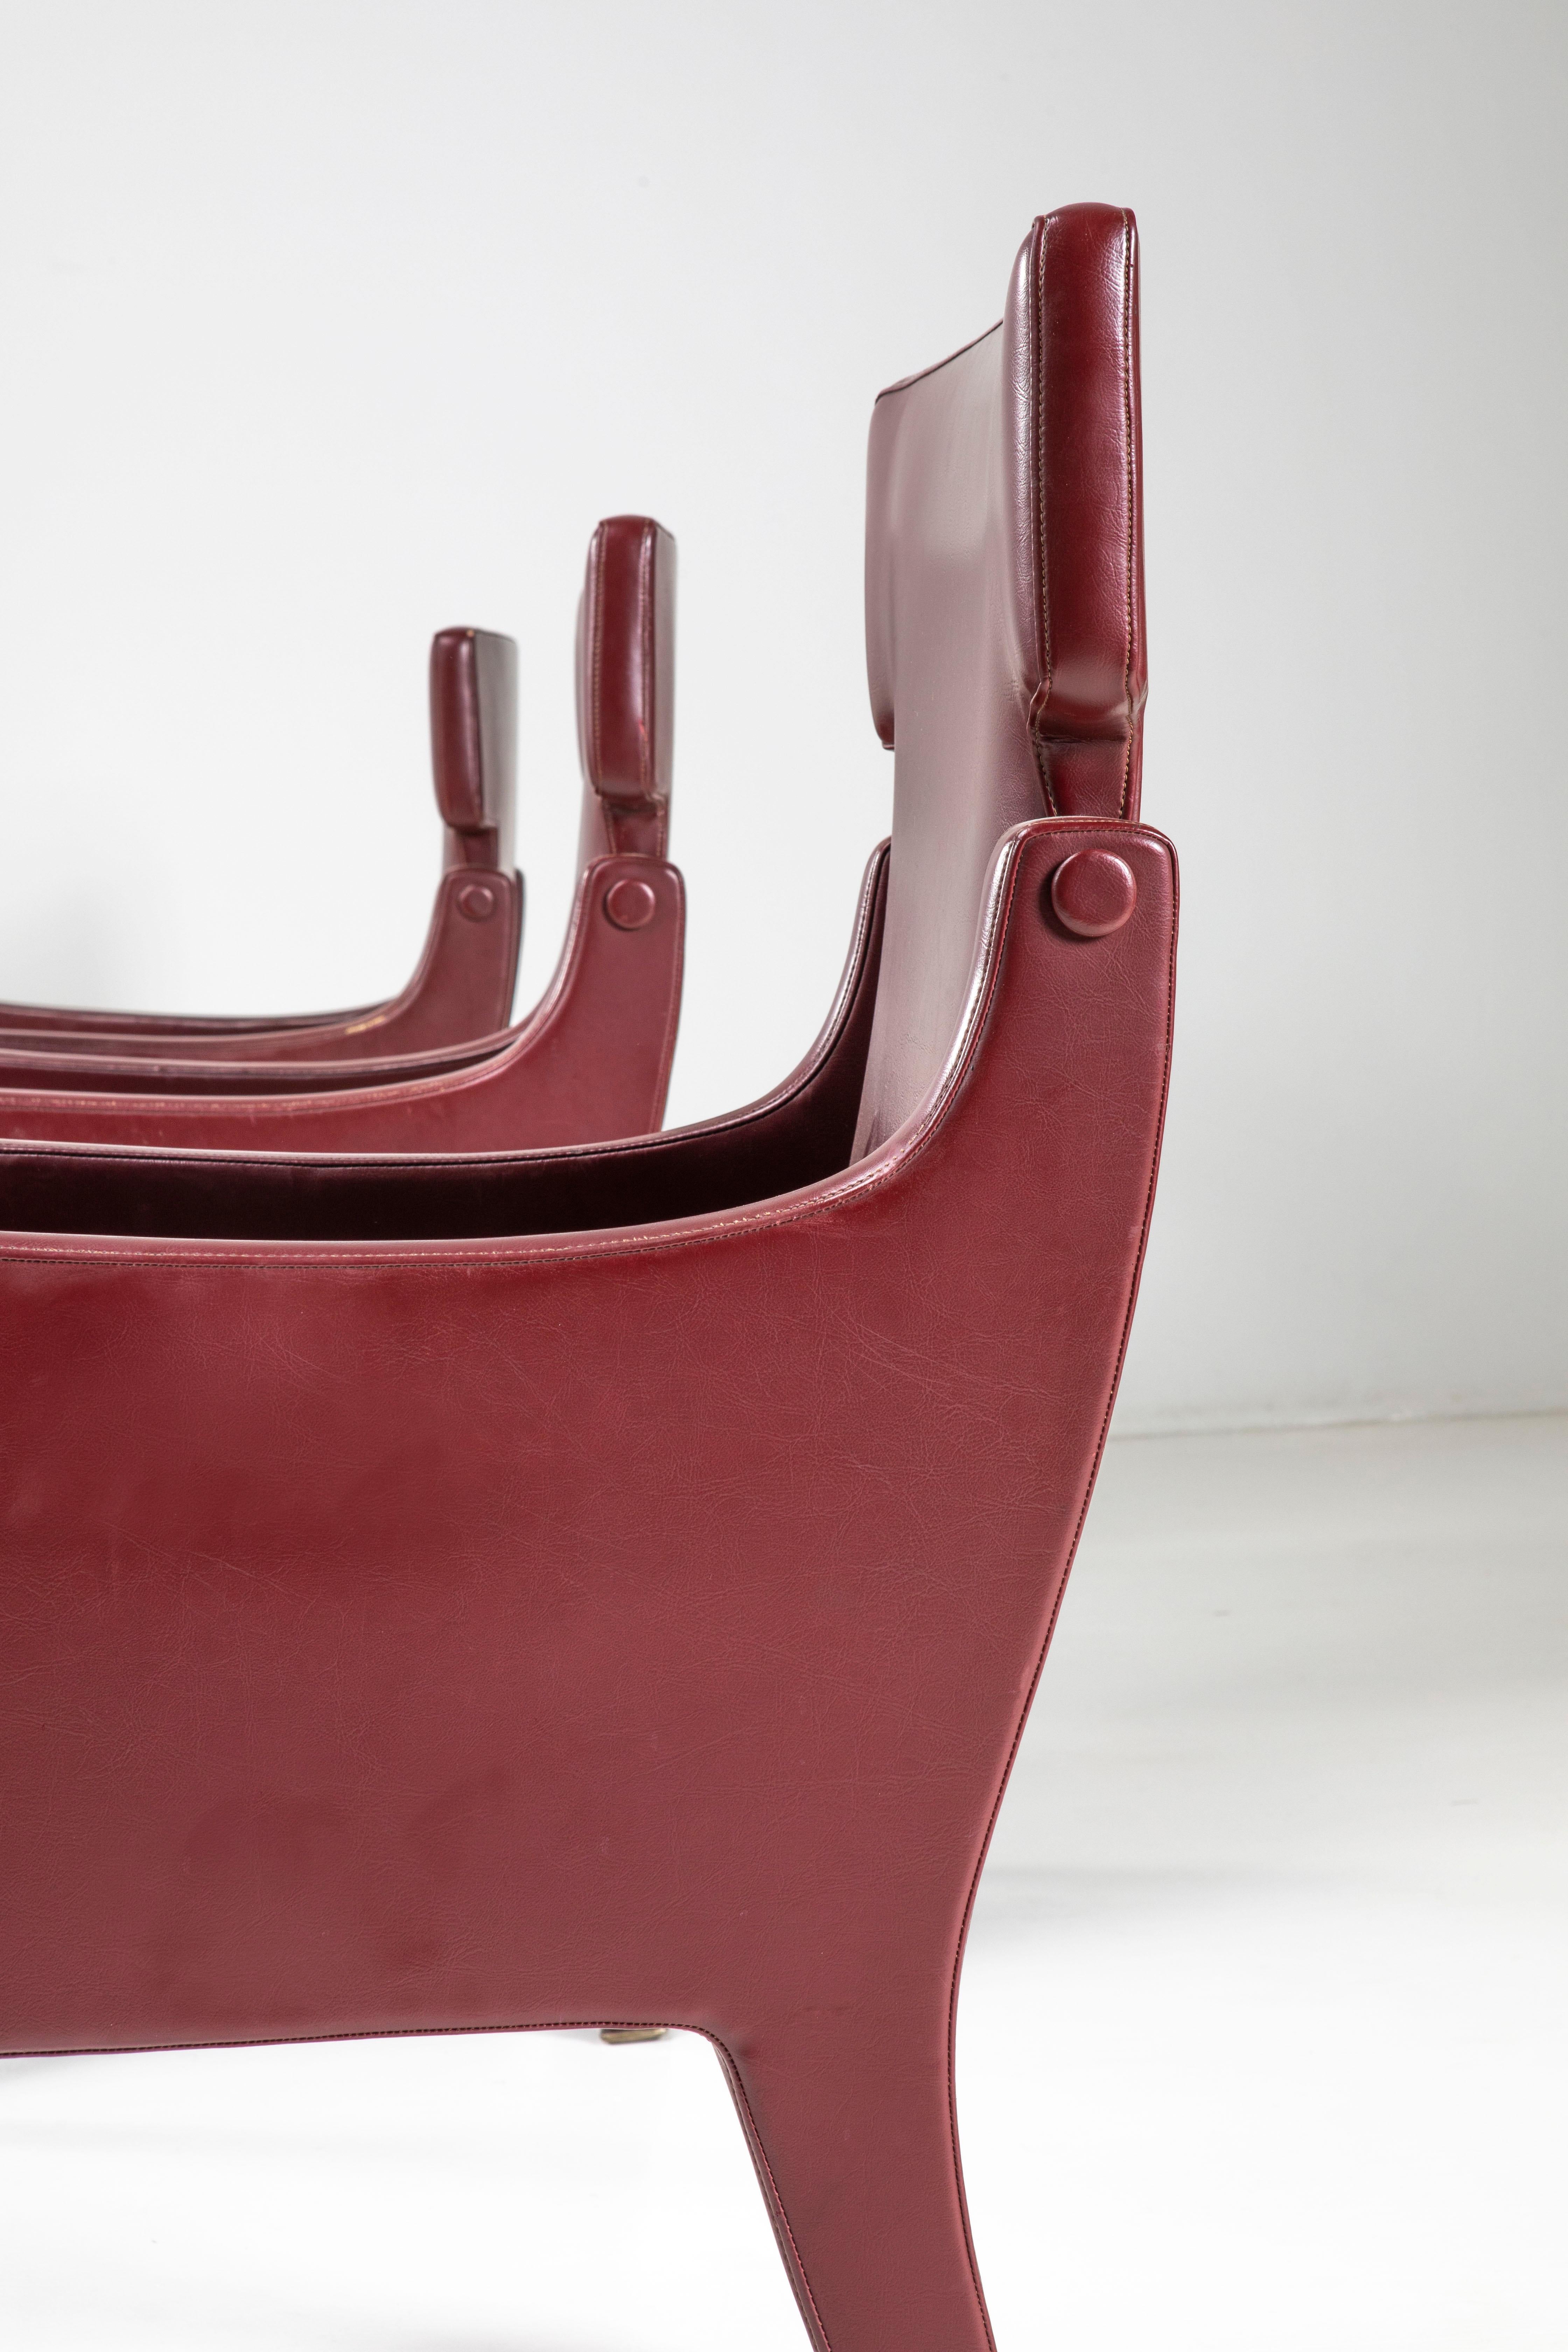 Faux Leather Ignazio Gardella Six armchairs P10 for Azucena, Italian Design 1963